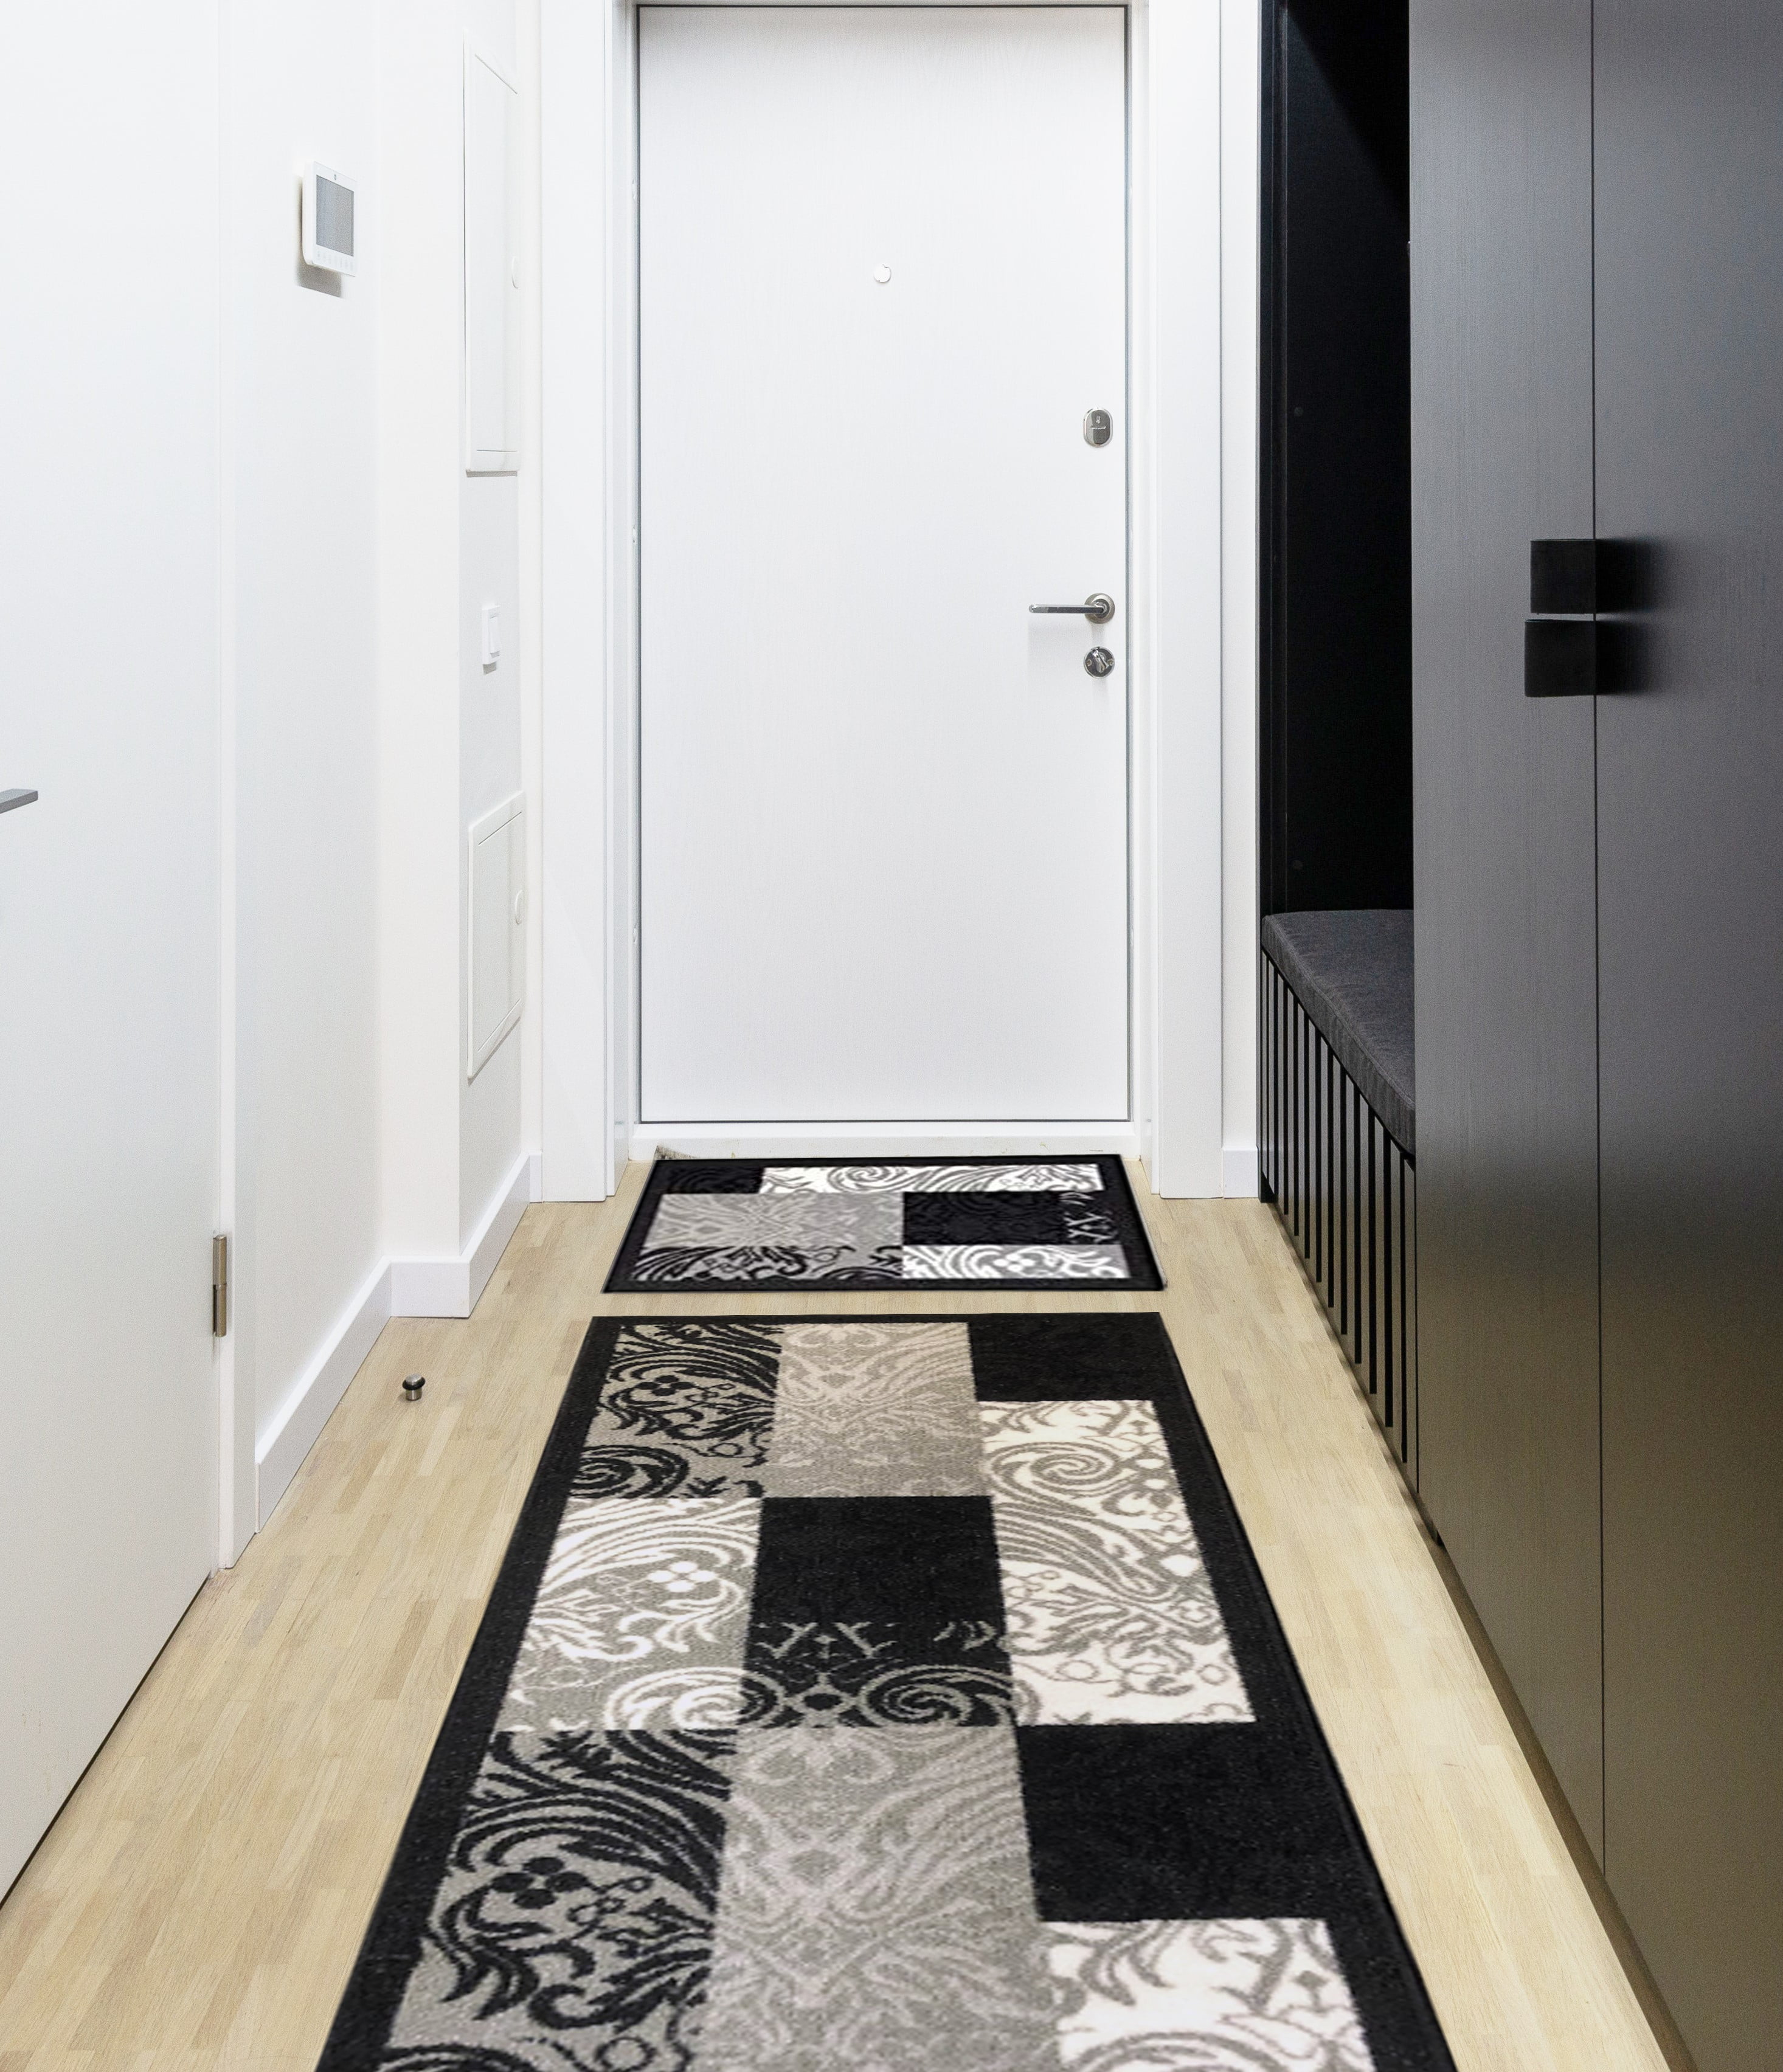 Carpet Runner Rug Modern kitchen Hall Area Rugs Long Rubber non-slip Backing 